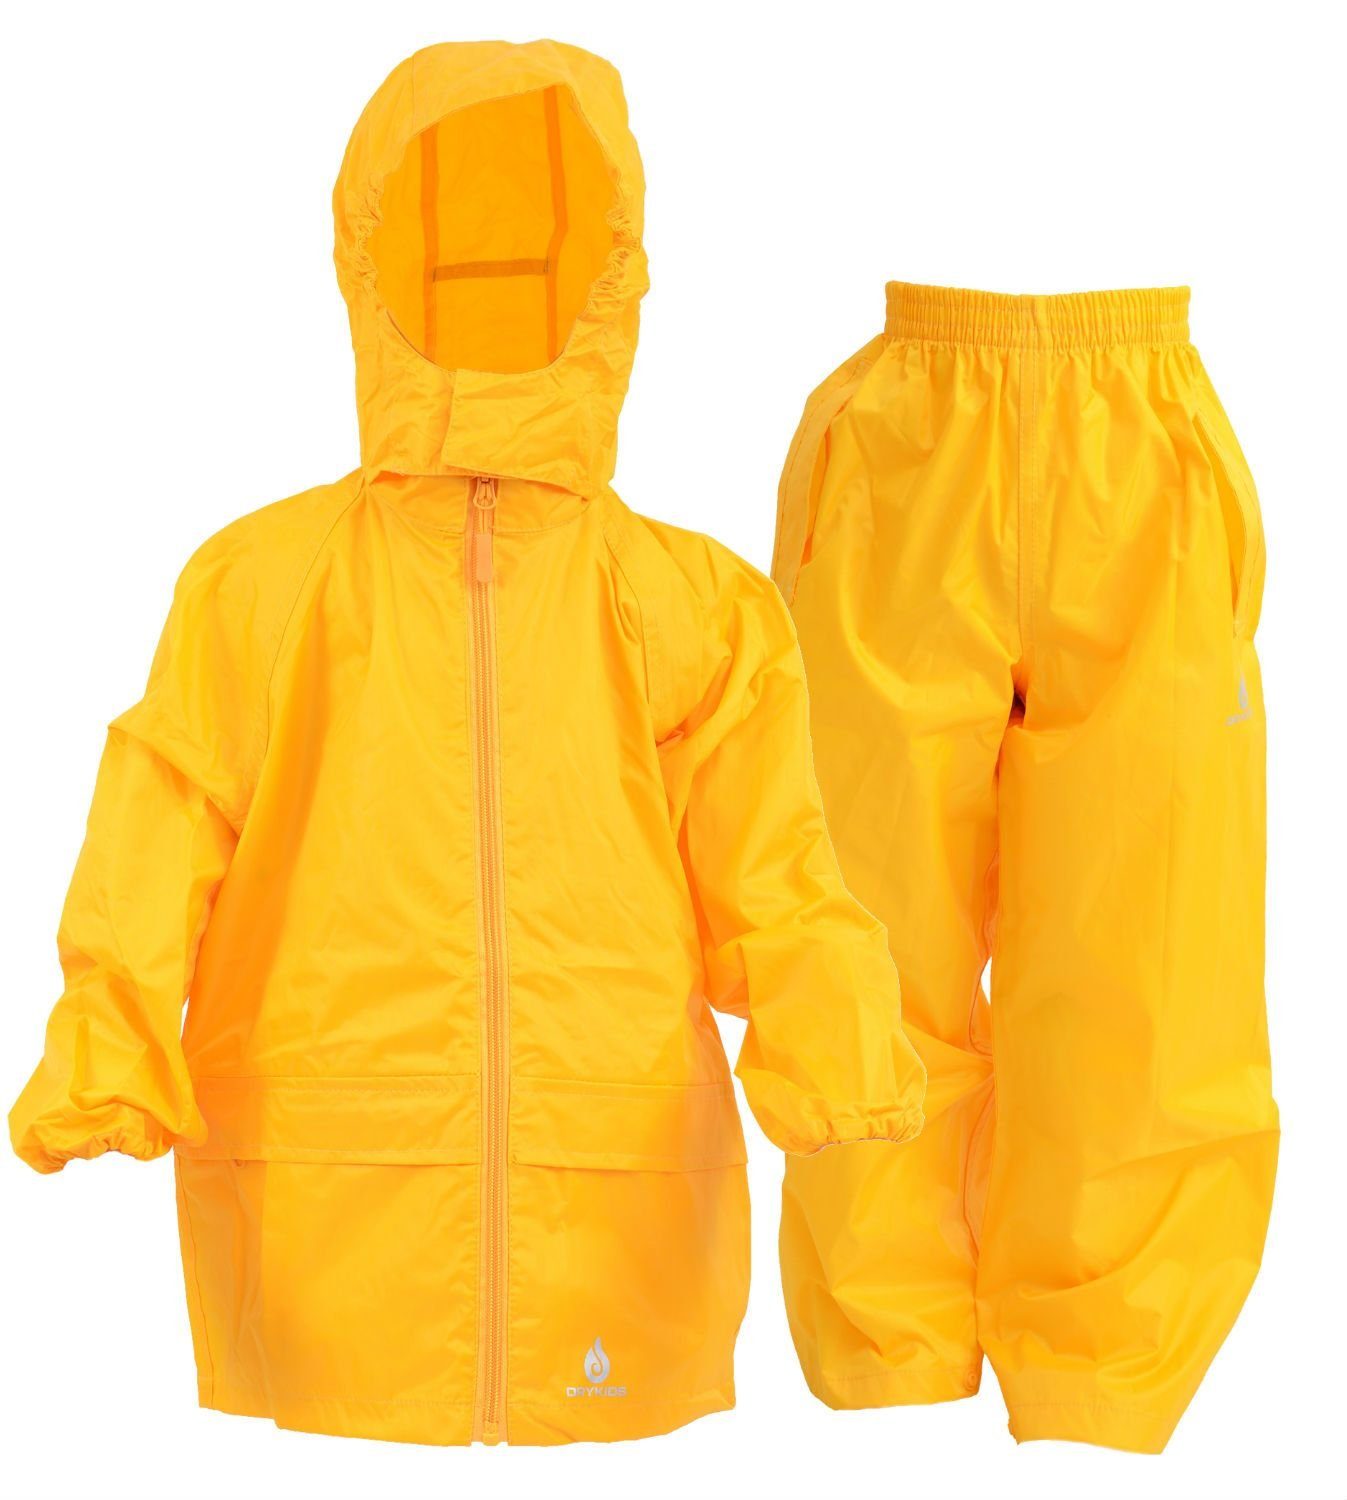 DRY KIDS Regenanzug (1-tlg), Wasserdichtes Kinder Regenanzug-Set Regenjacke  und Überhose Größe 80 - 92 reflektierende Regenbekleidung Camouflage-Grün  online kaufen | OTTO